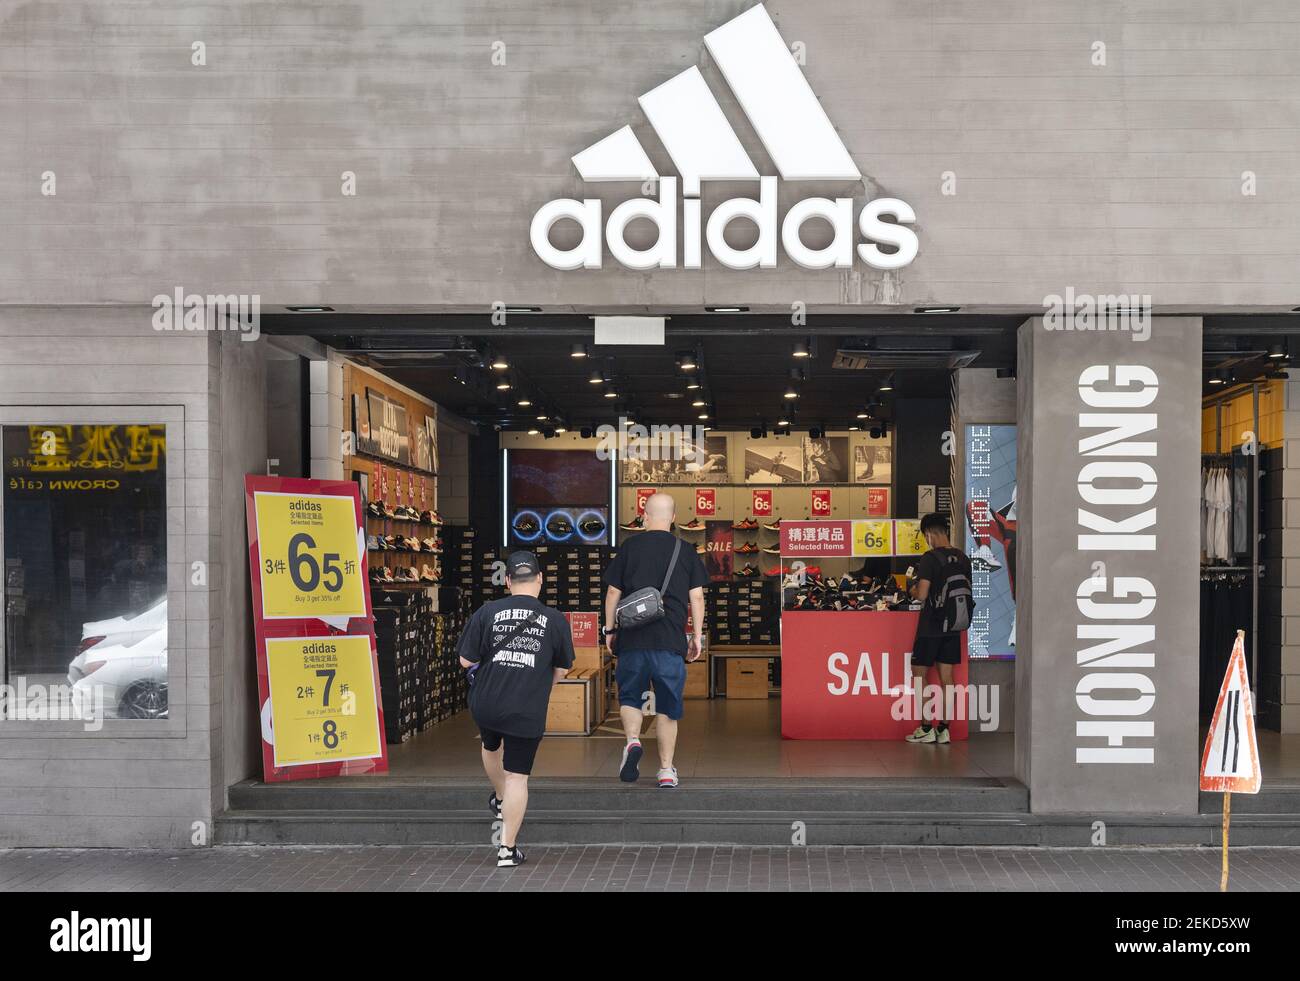 Deutsche multinationale Sportbekleidung Bekleidungsmarke Adidas Store in  Hongkong gesehen. (Foto von Budrul Chukrut / SOPA Images/Sipa USA  Stockfotografie - Alamy